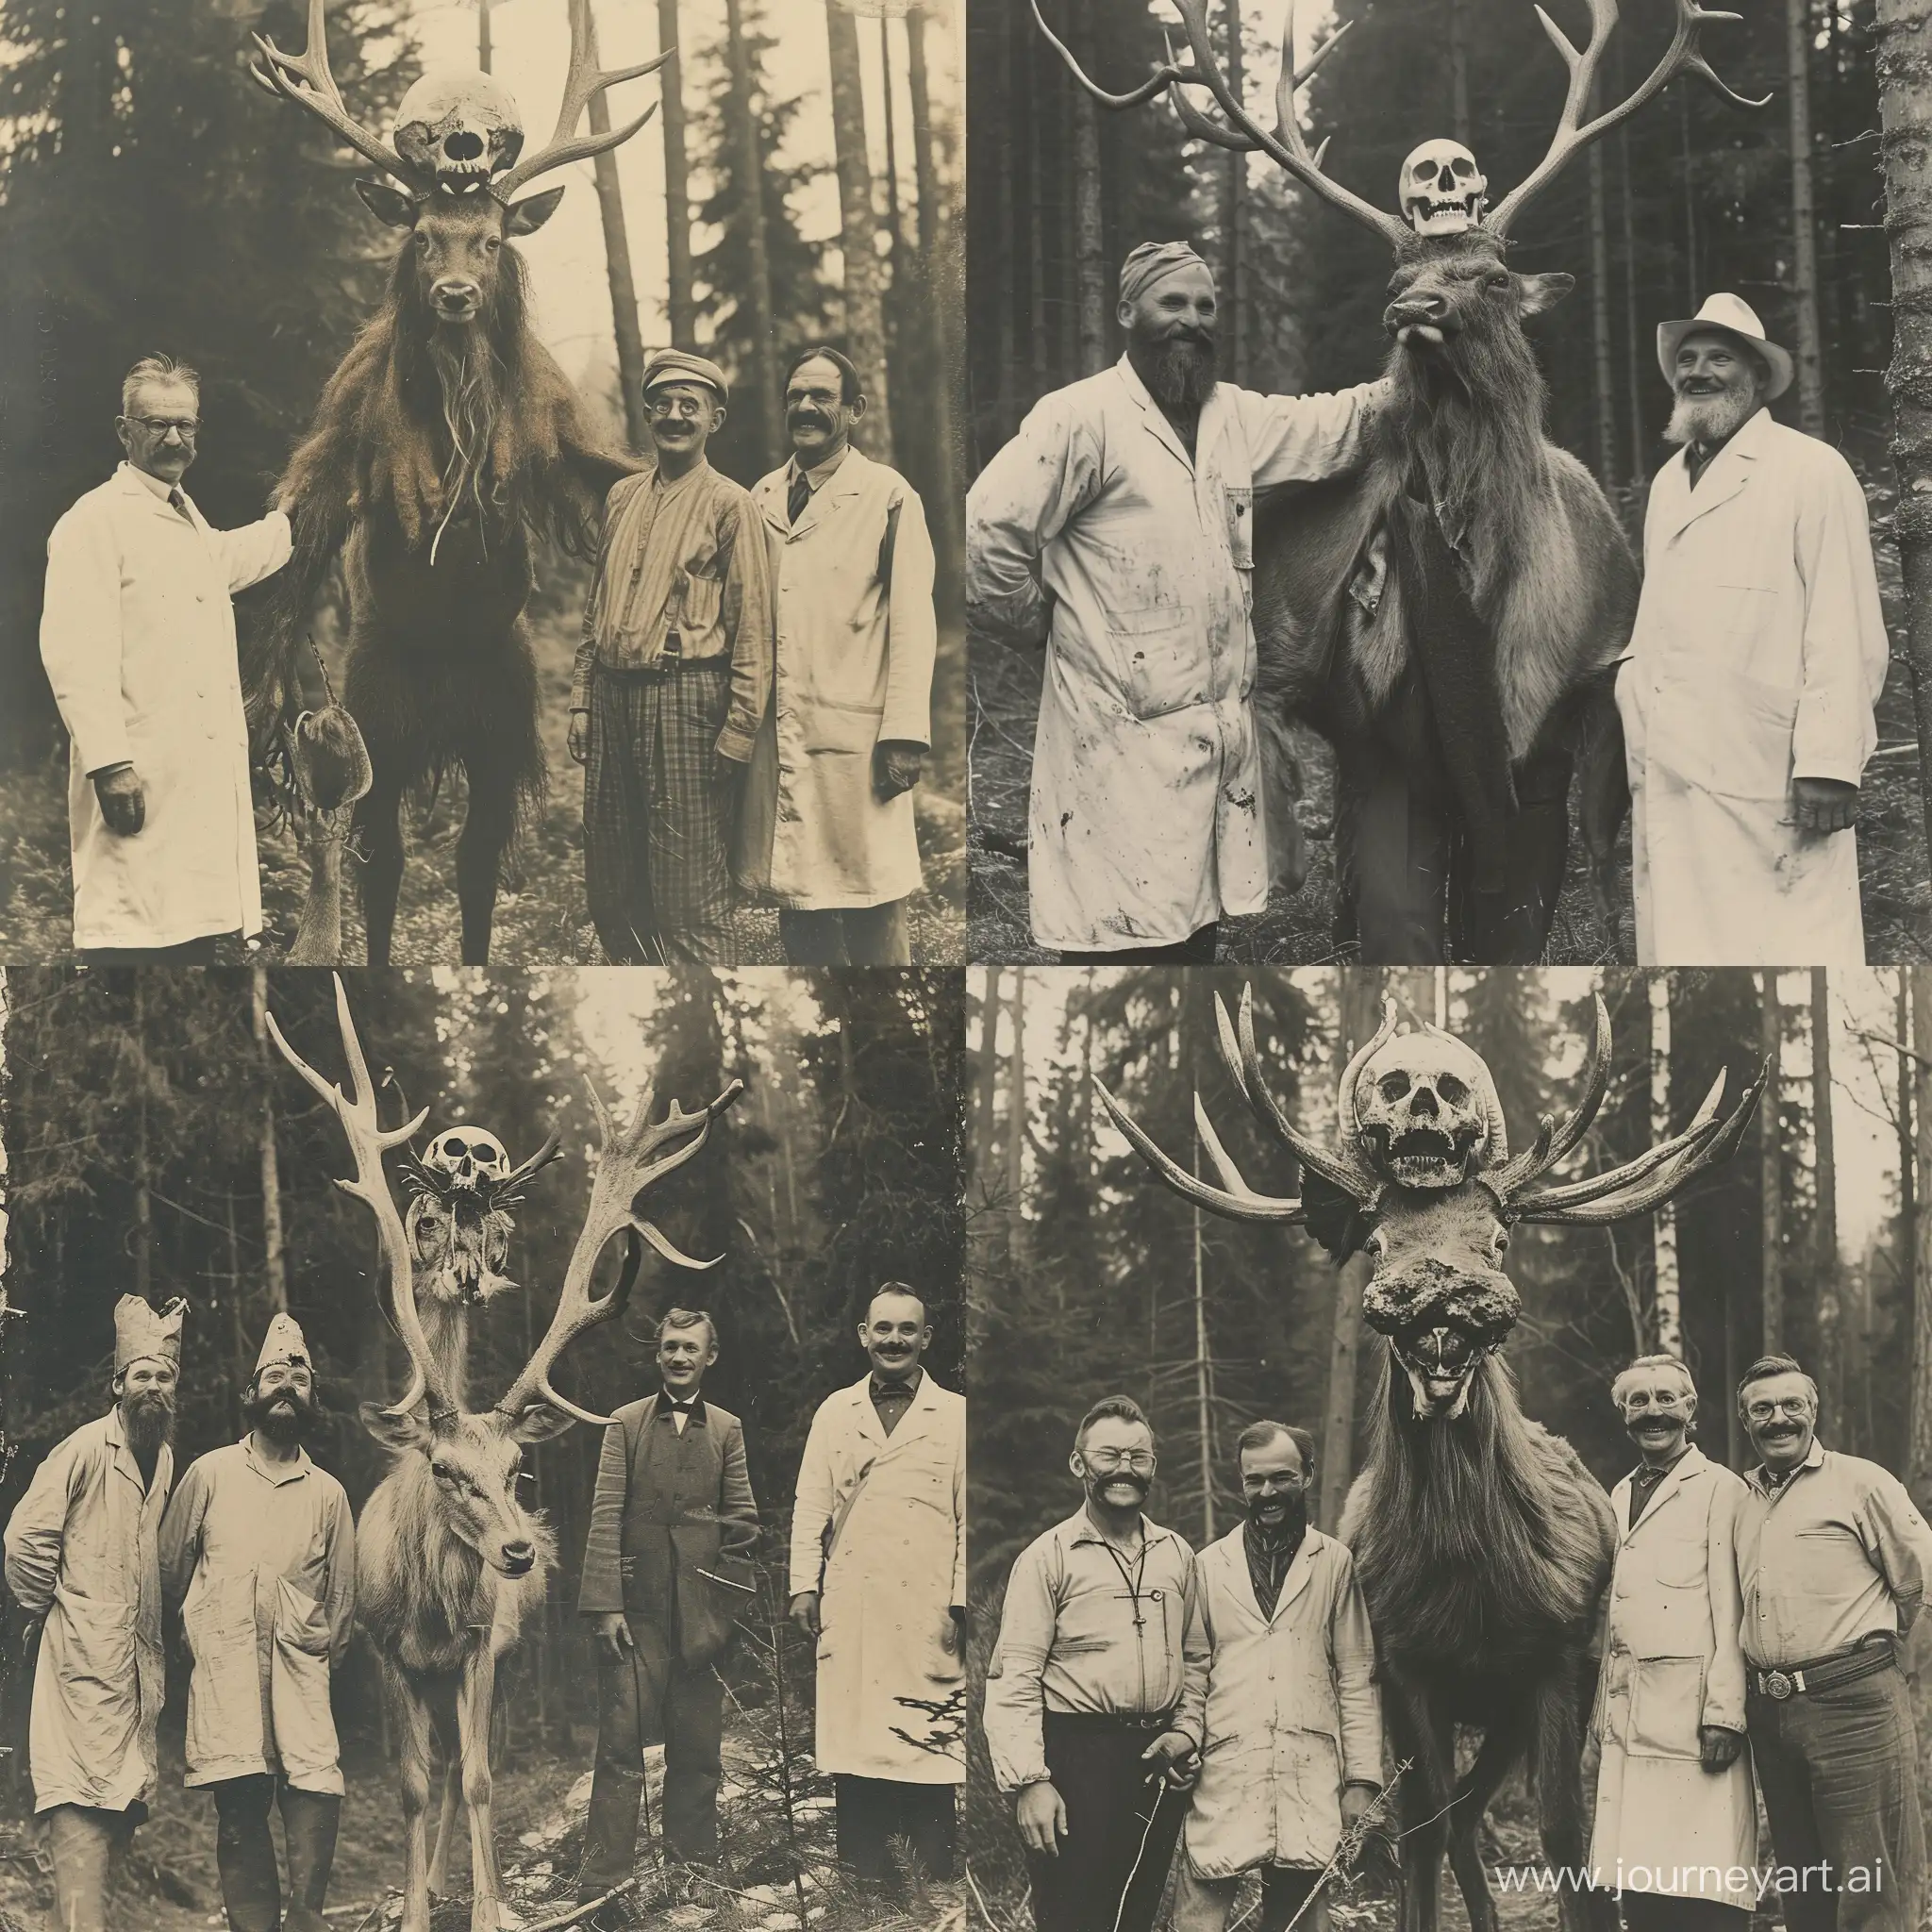 Леший с черепом оленя на голове, оленьи рога, три метра, с учёными на старом фото, начало 20 века, лес, улыбаются 